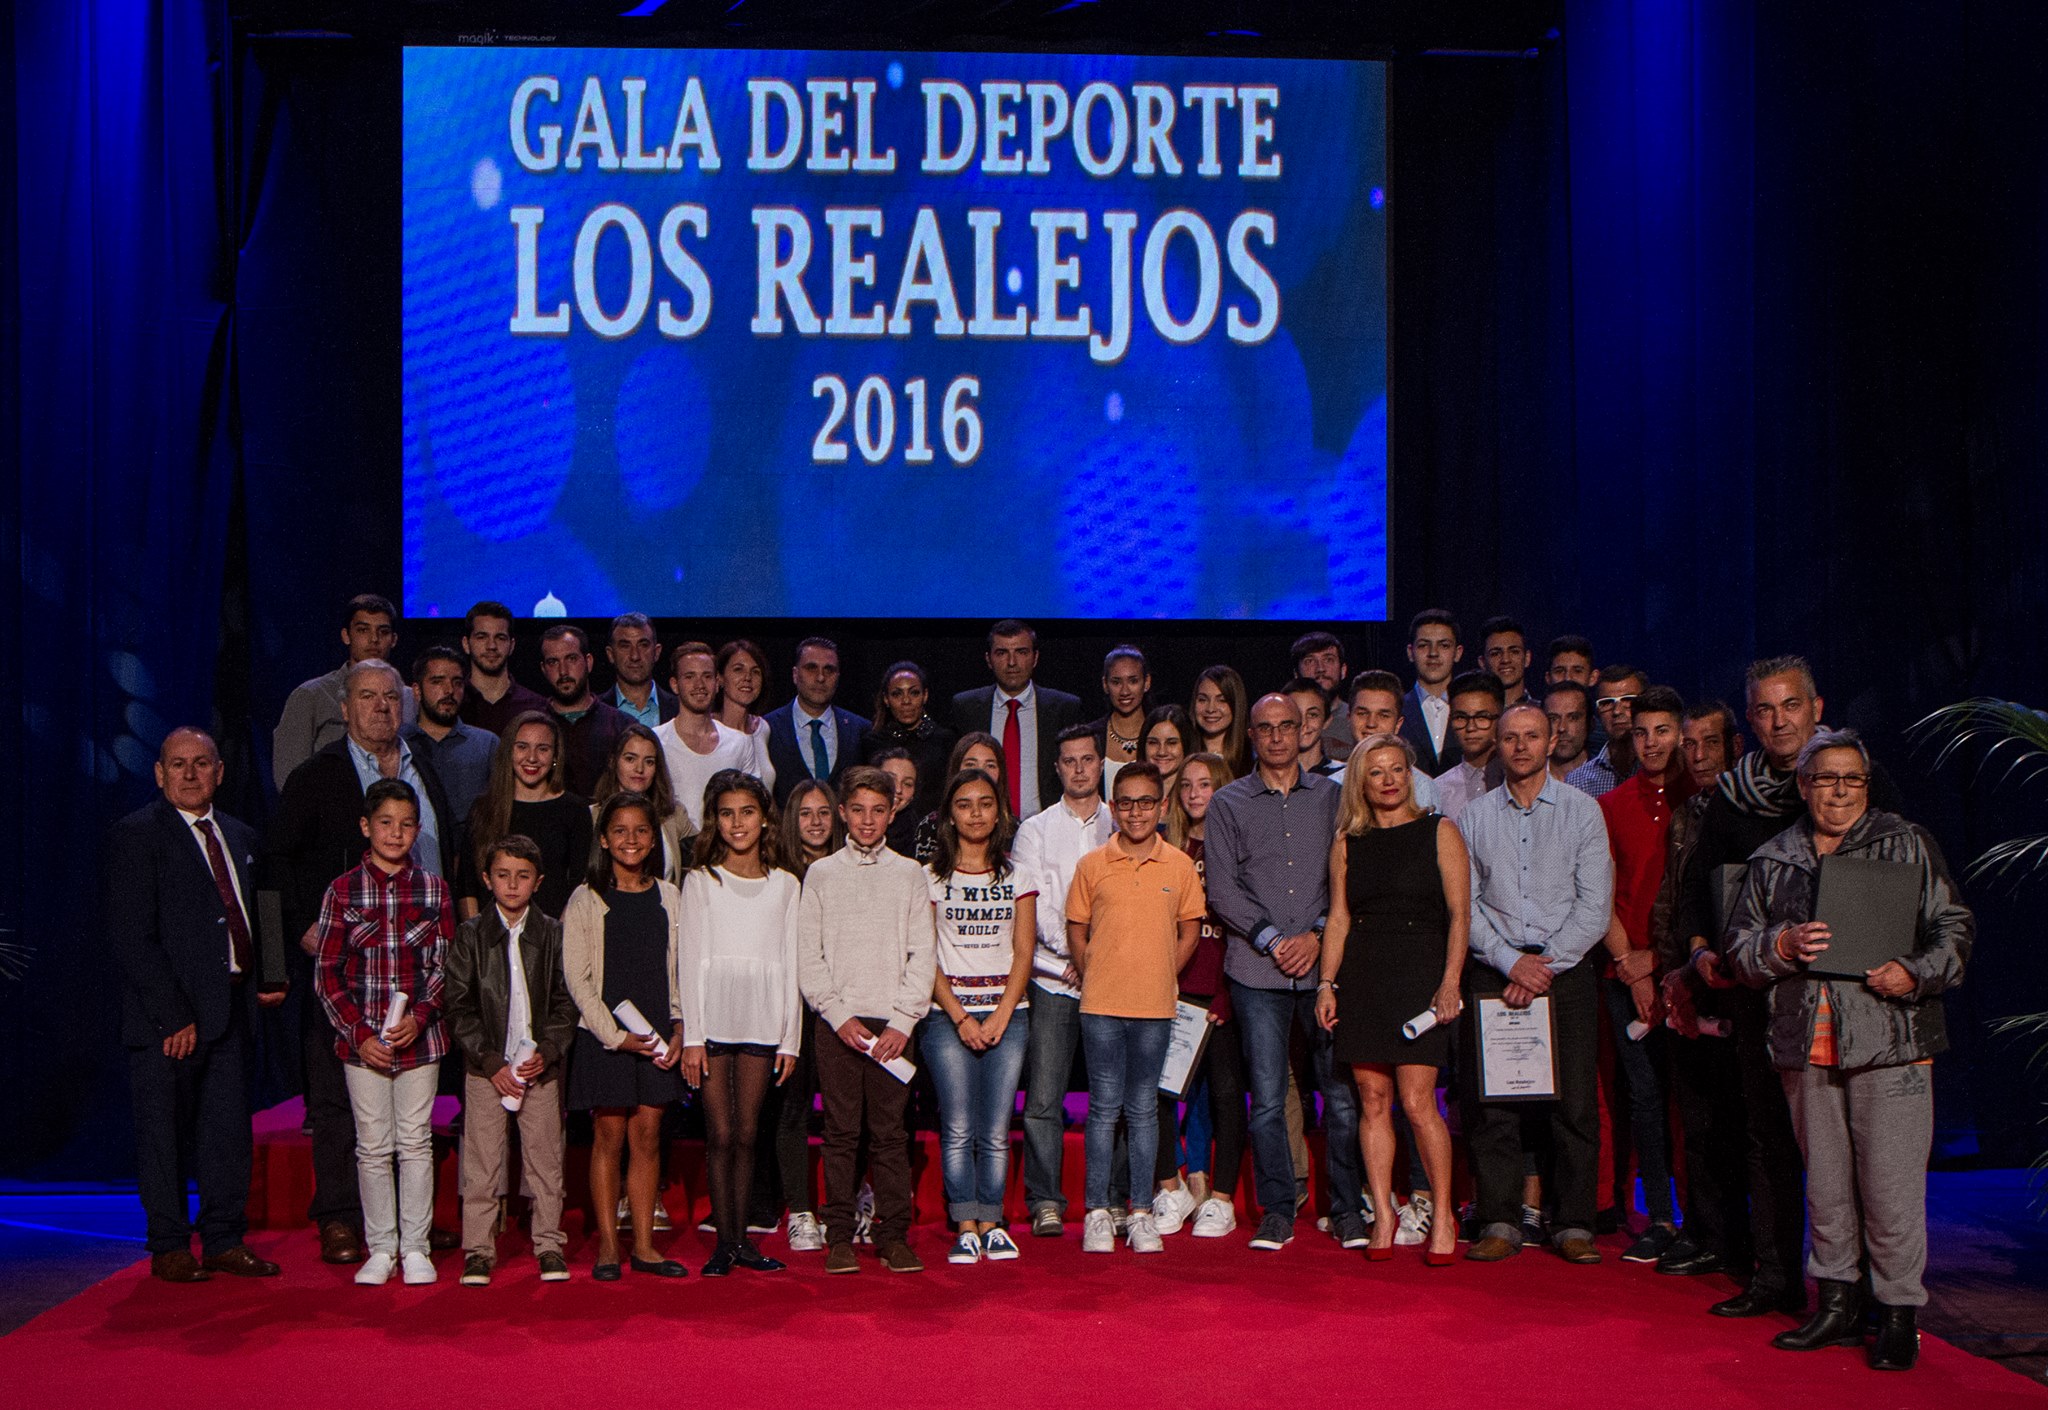 Gala del Deporte Los Realejos 2016